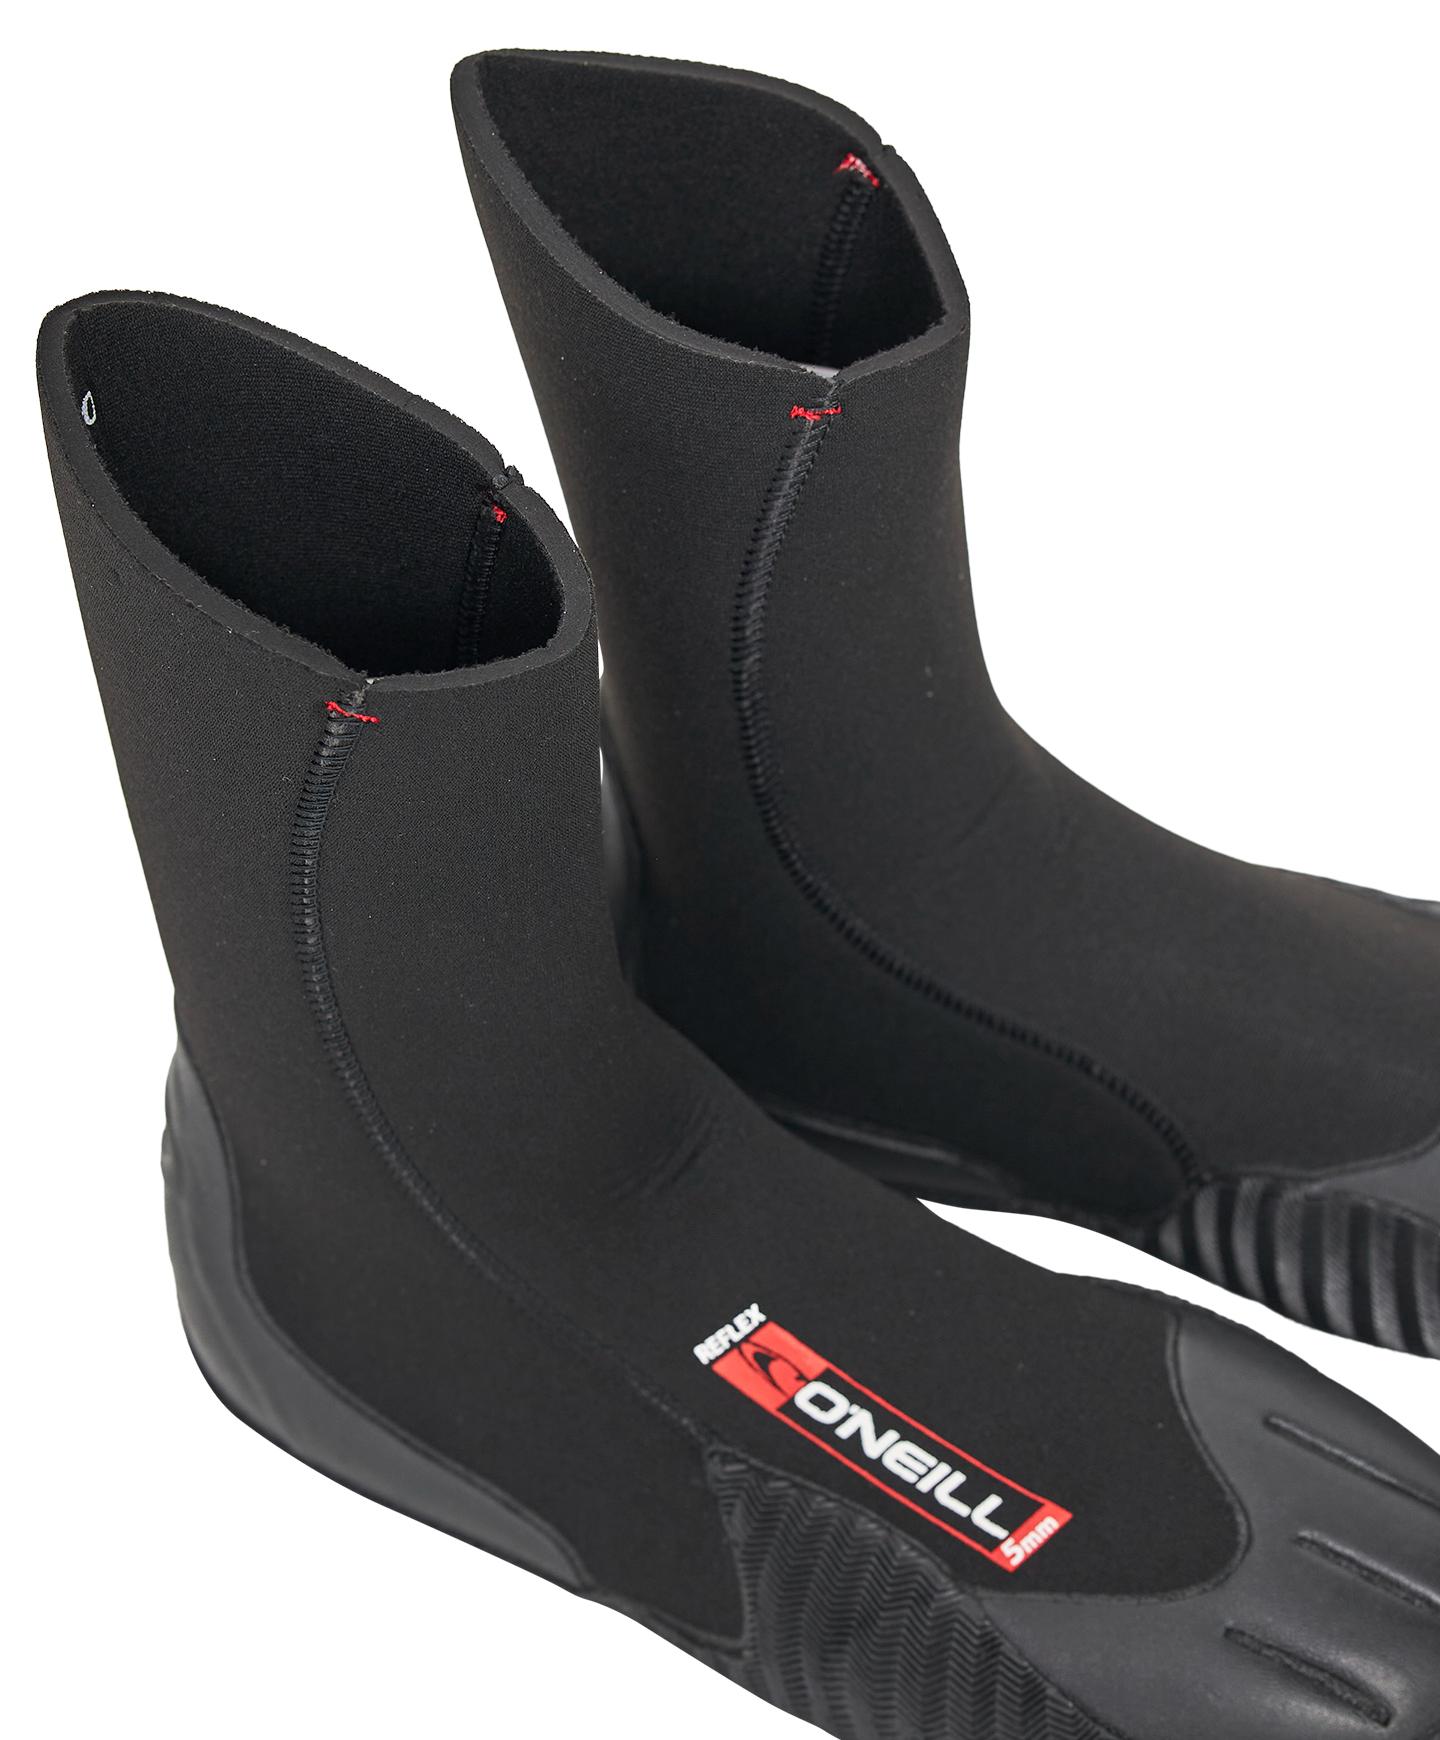 Reflex 5mm Round Toe Wetsuit Boot - Black